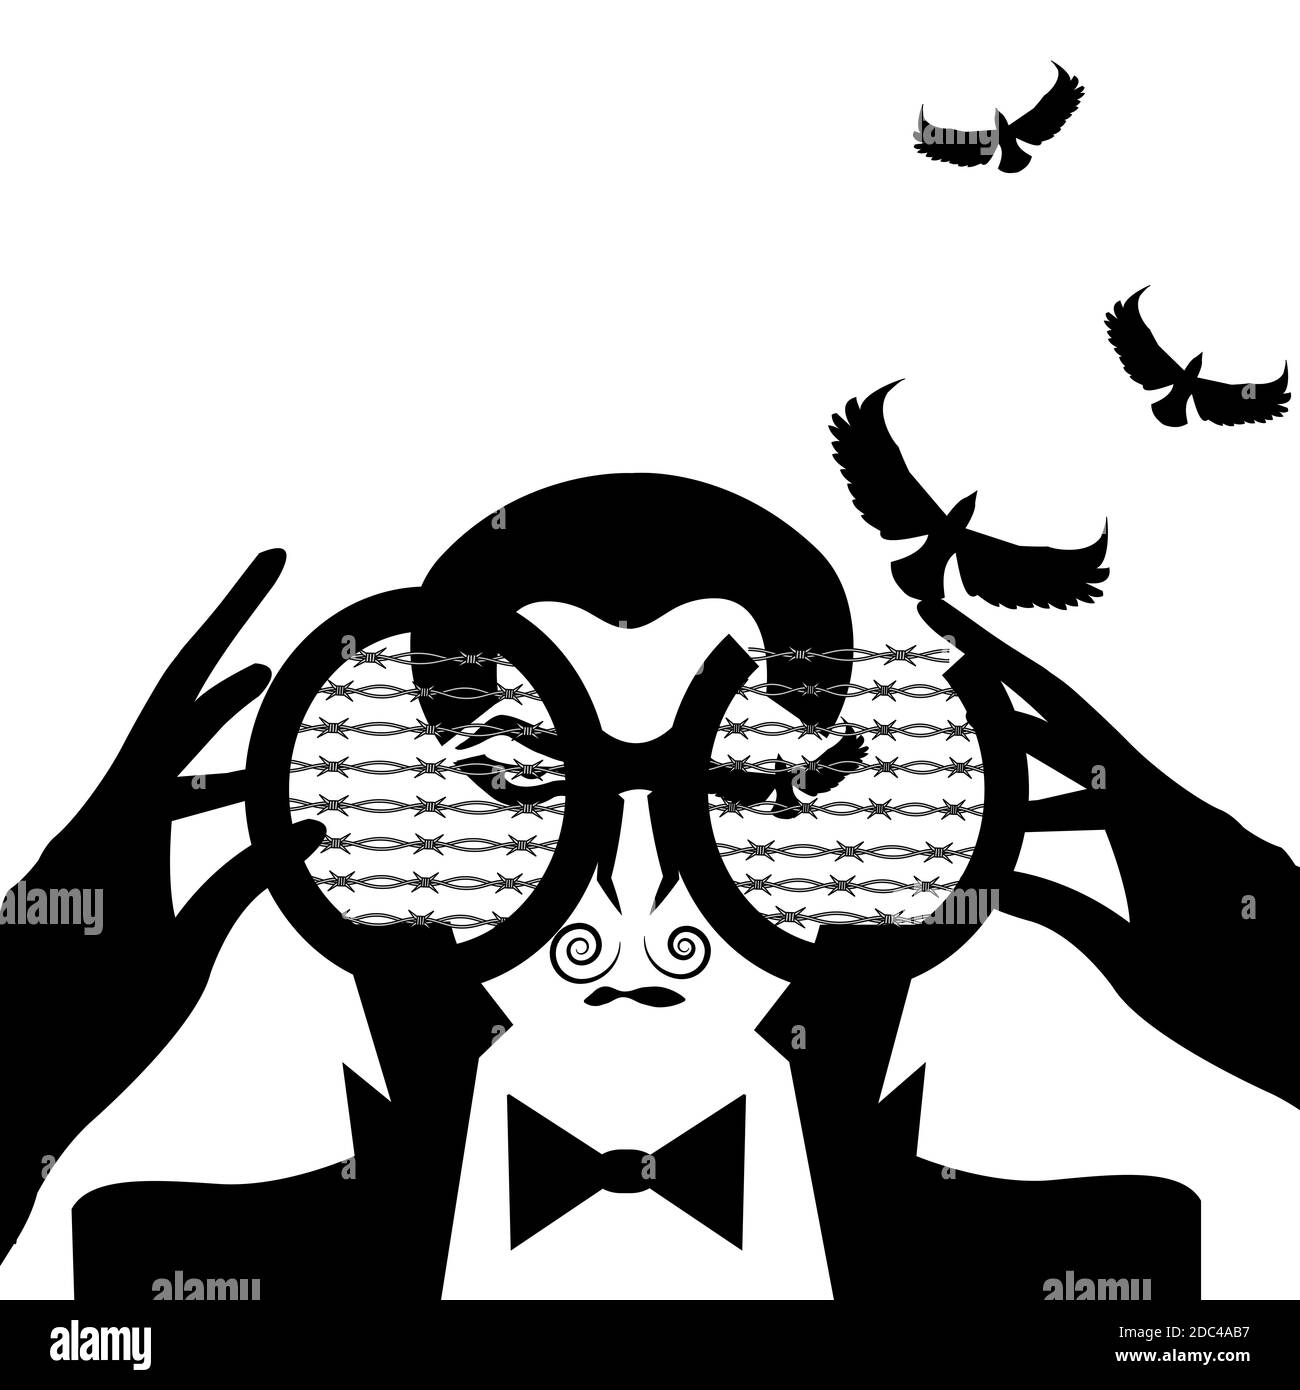 Illustration eines Mannes, der durch eine Binnacle schaut und Augen in der Form von Vögeln hat, die abheben, isoliert auf Weiß Stockfoto